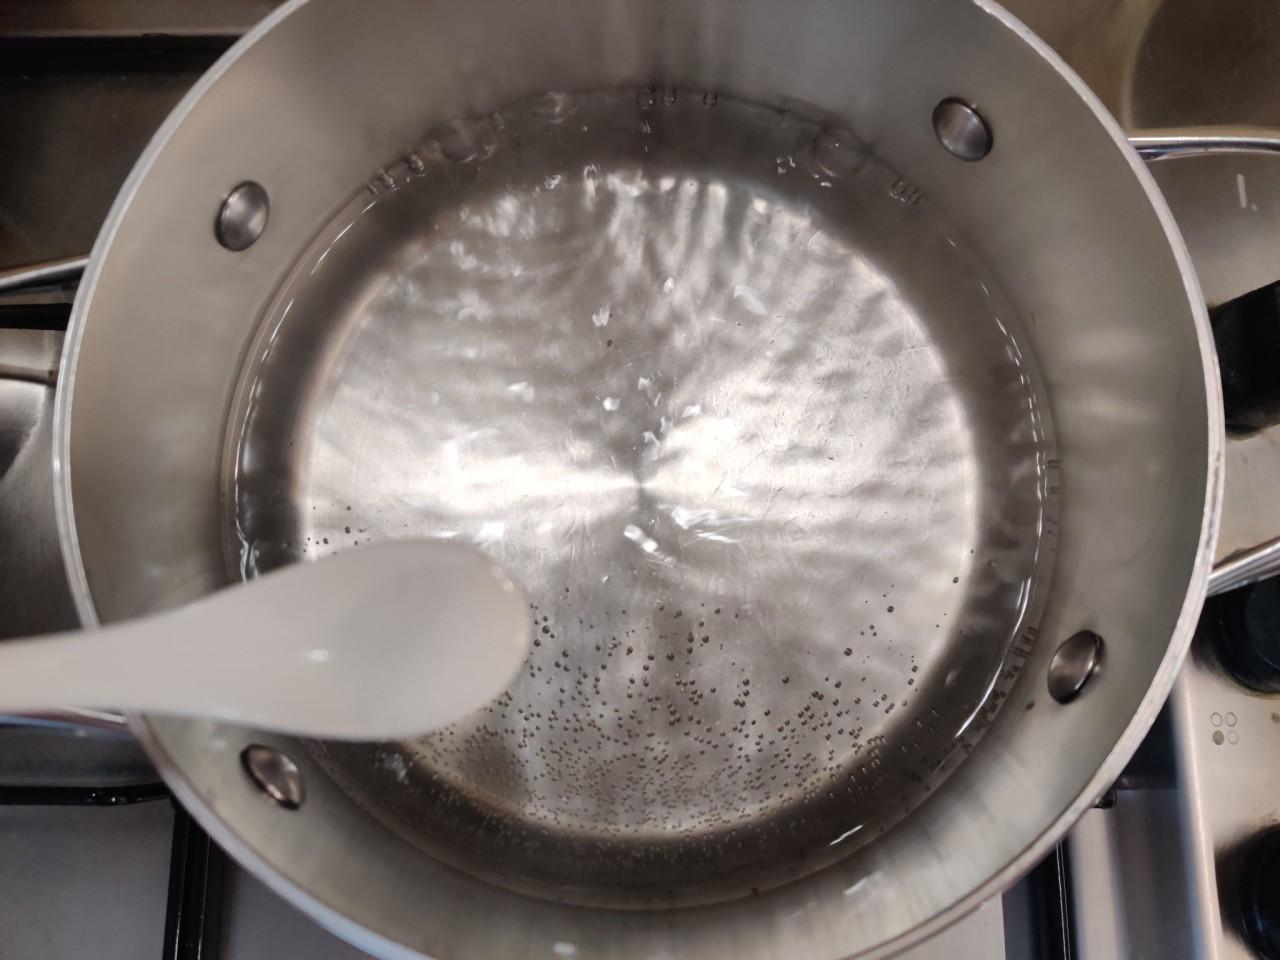 Время кипения воды в кастрюле. Пельмени засыпают в кипящую воду. Вода кипит в алюминиевой кастрюле. Как выглядит кипящая вода для пельменей. Как выглядит кипящая вода в кастрюле для пельменей.